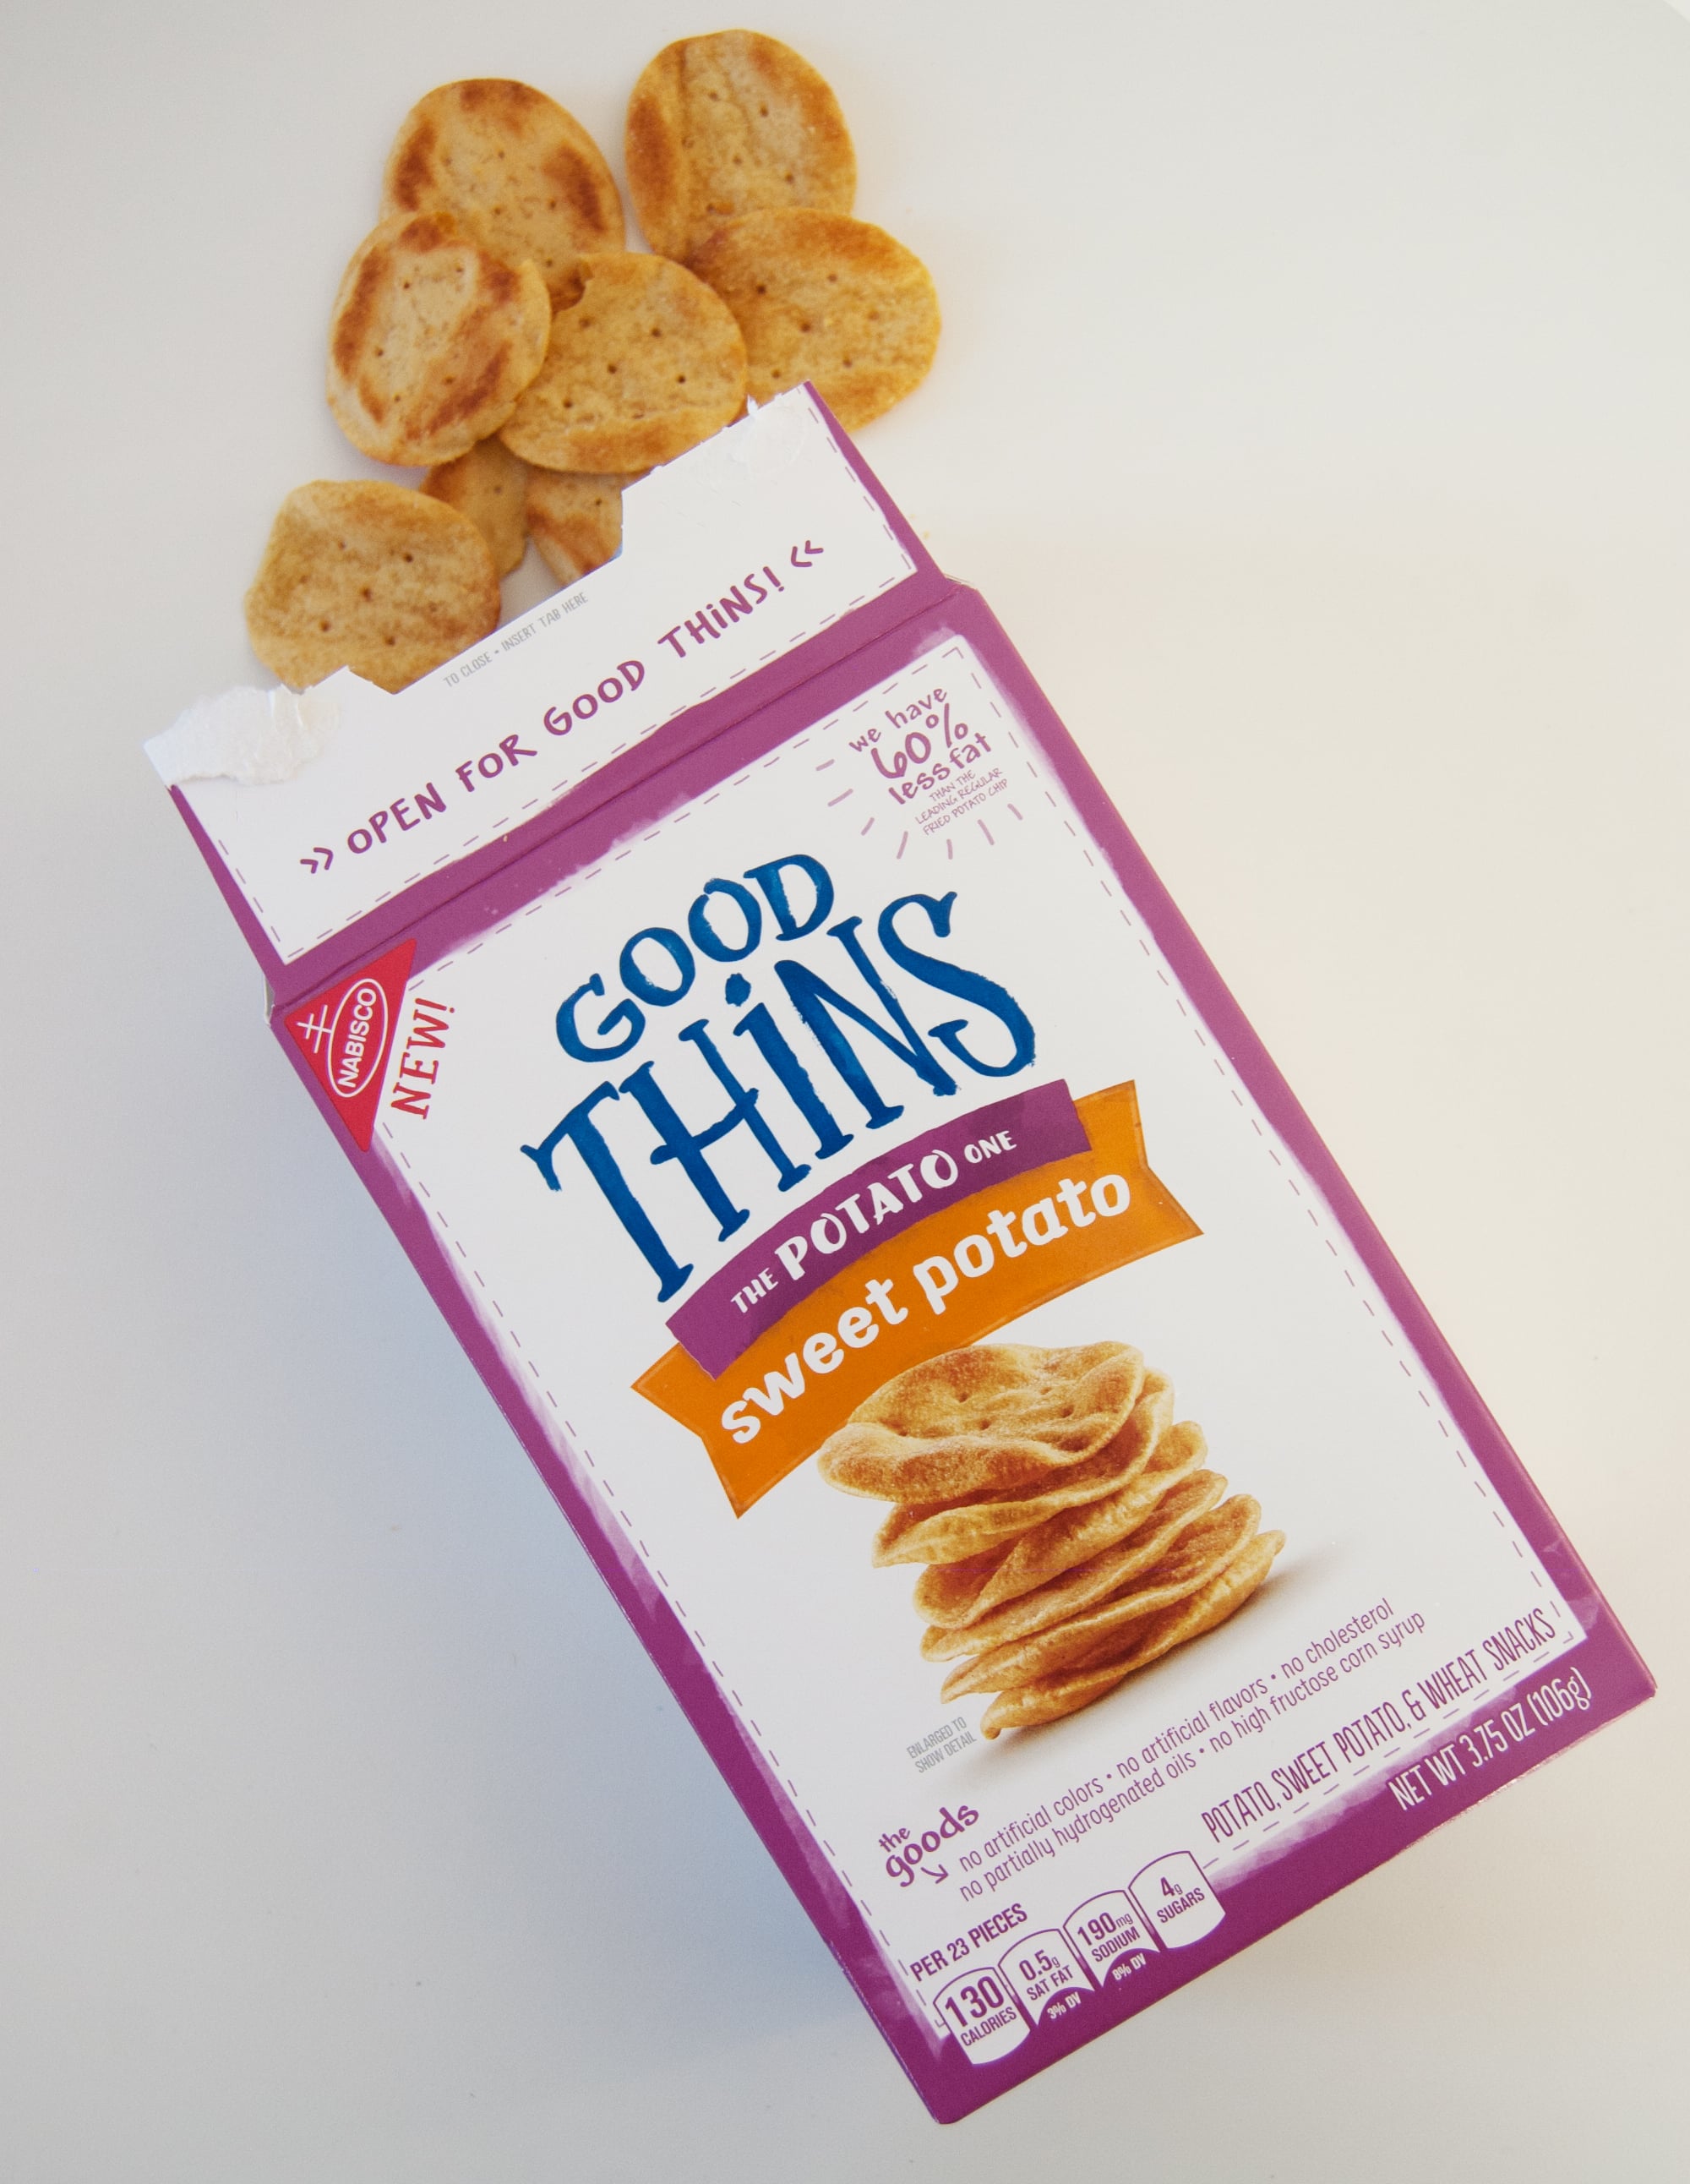 Good Thins Potato, Sweet Potato & Wheat Snacks 3.75 Oz, Crackers